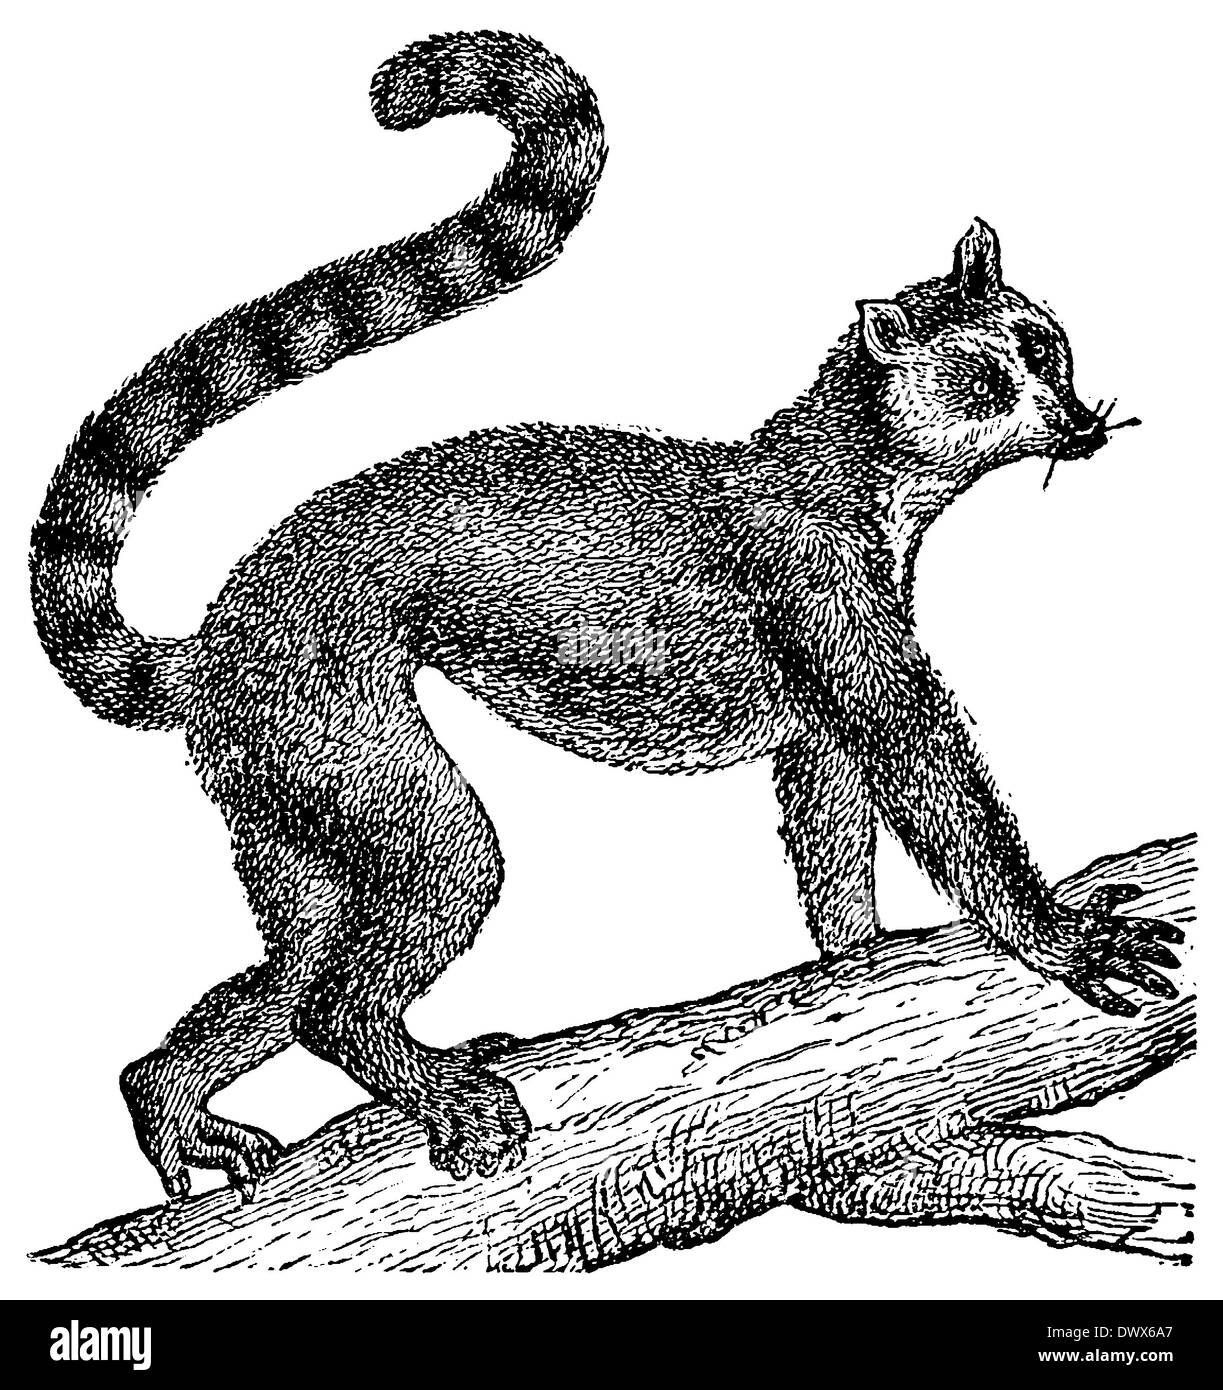 Ring-tailed Lemur Stockfoto